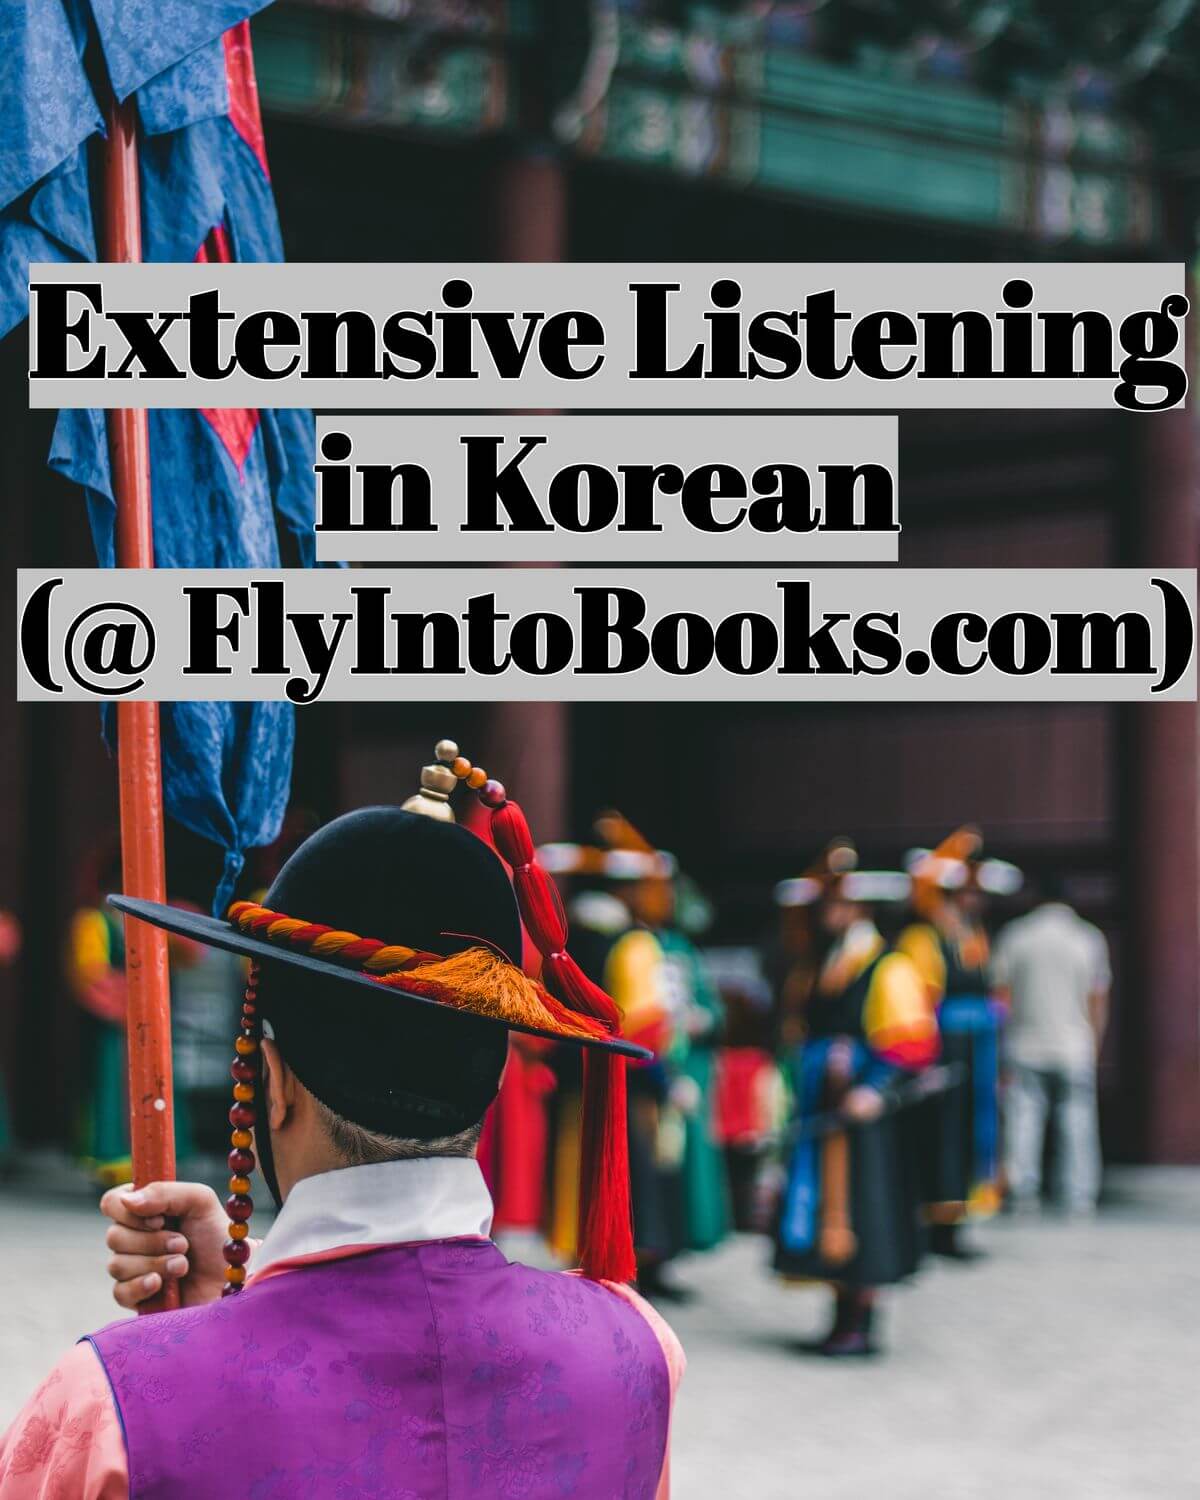 Extensive Listening in Korean (FlyIntoBooks.com)